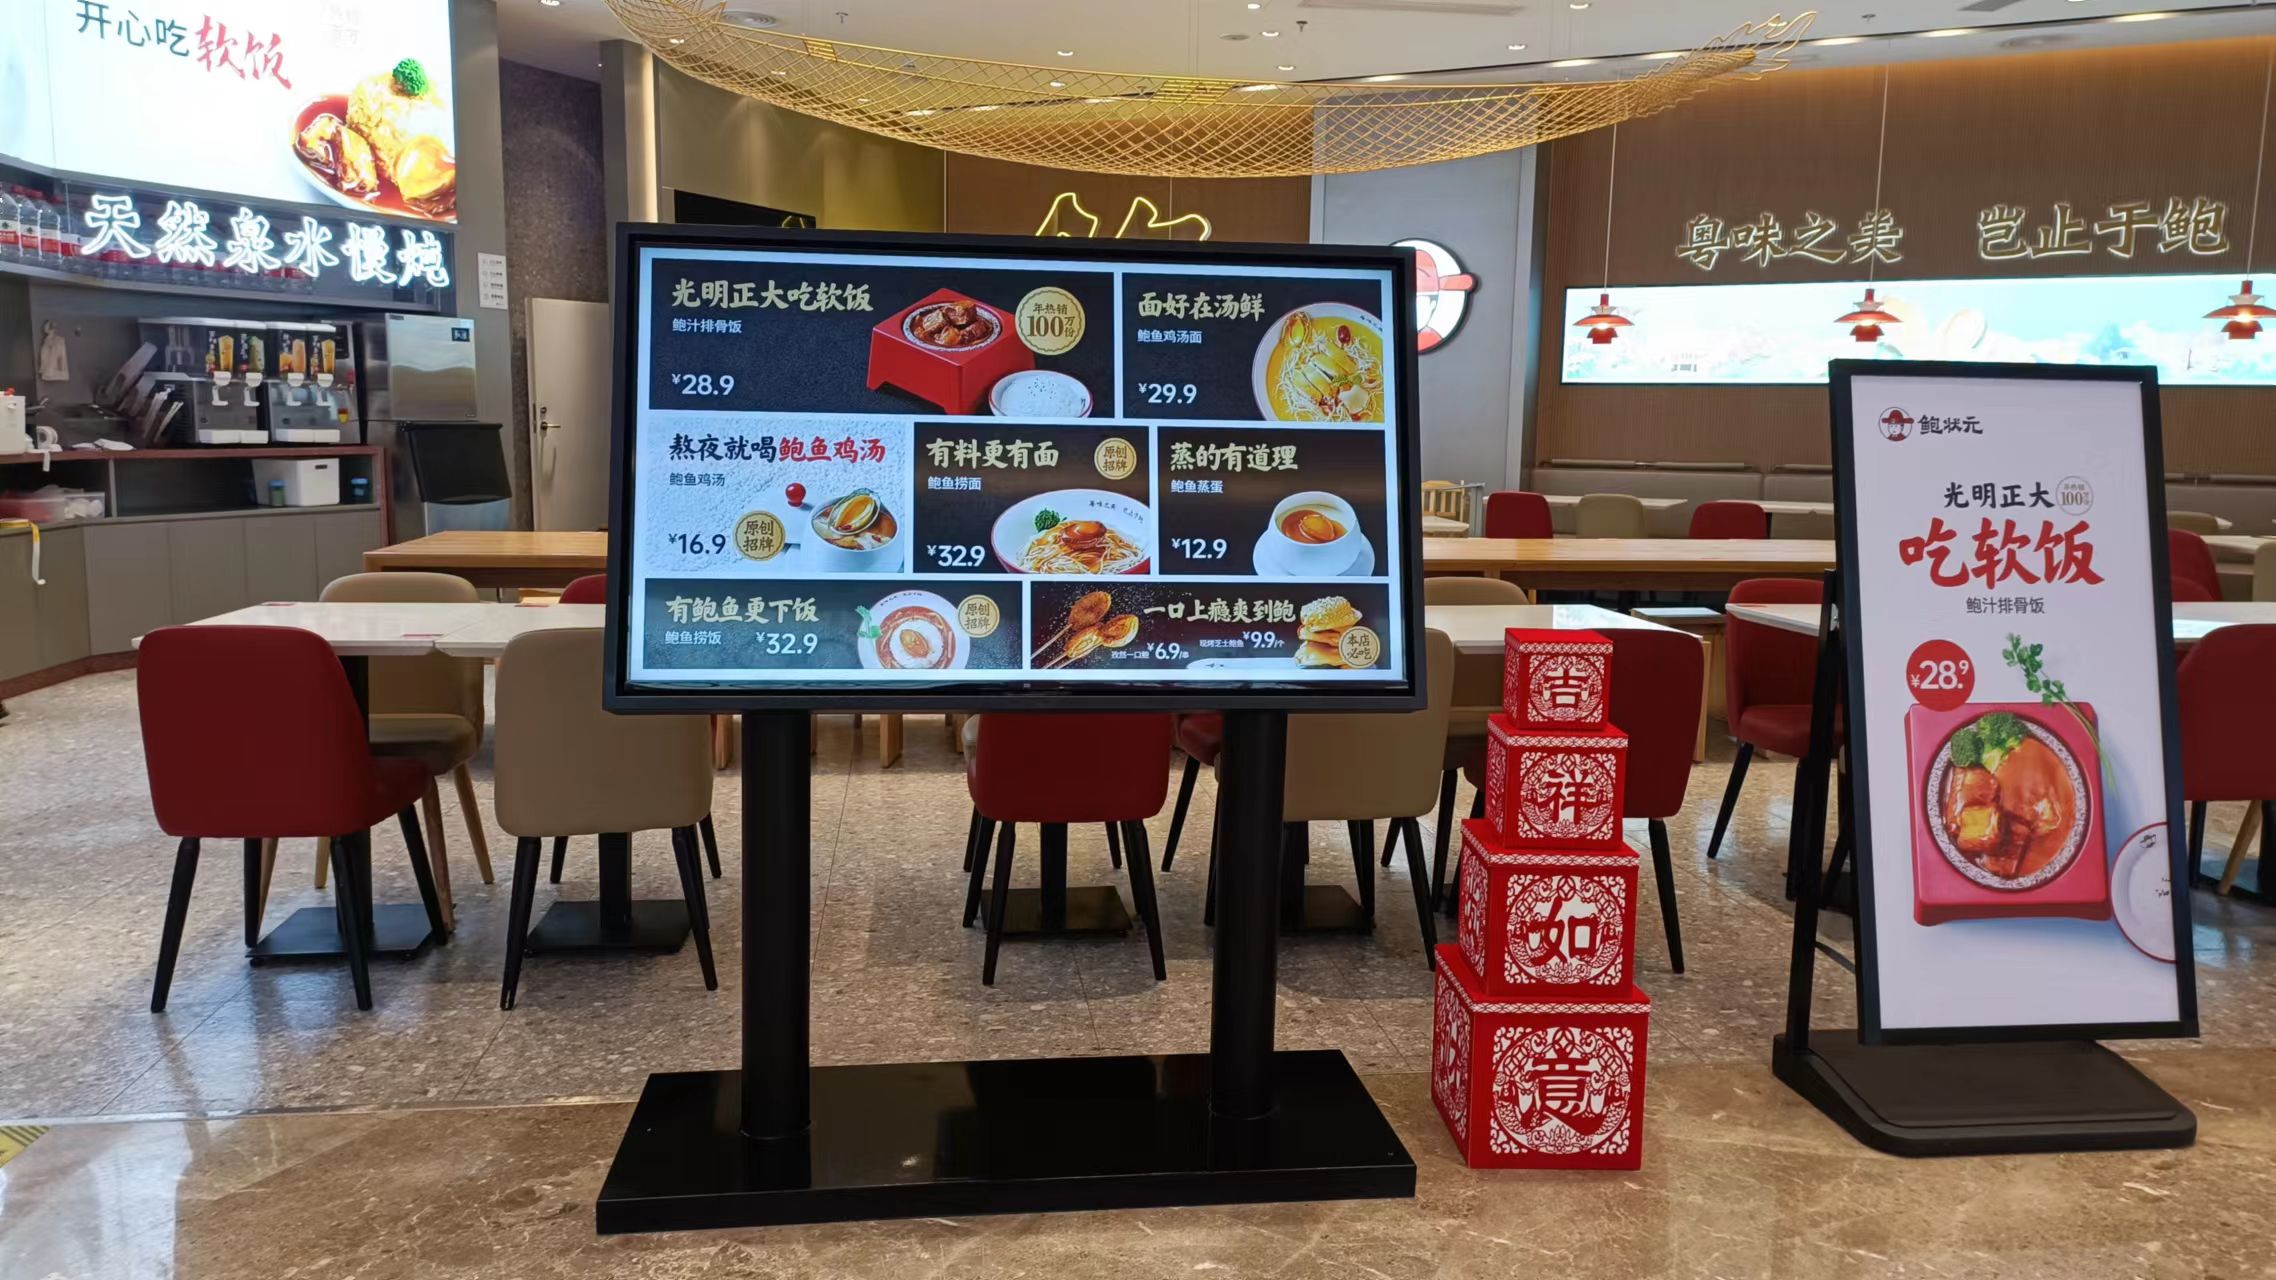 触拓智慧餐牌展示机助力快餐店连锁品牌打造优质用餐体验